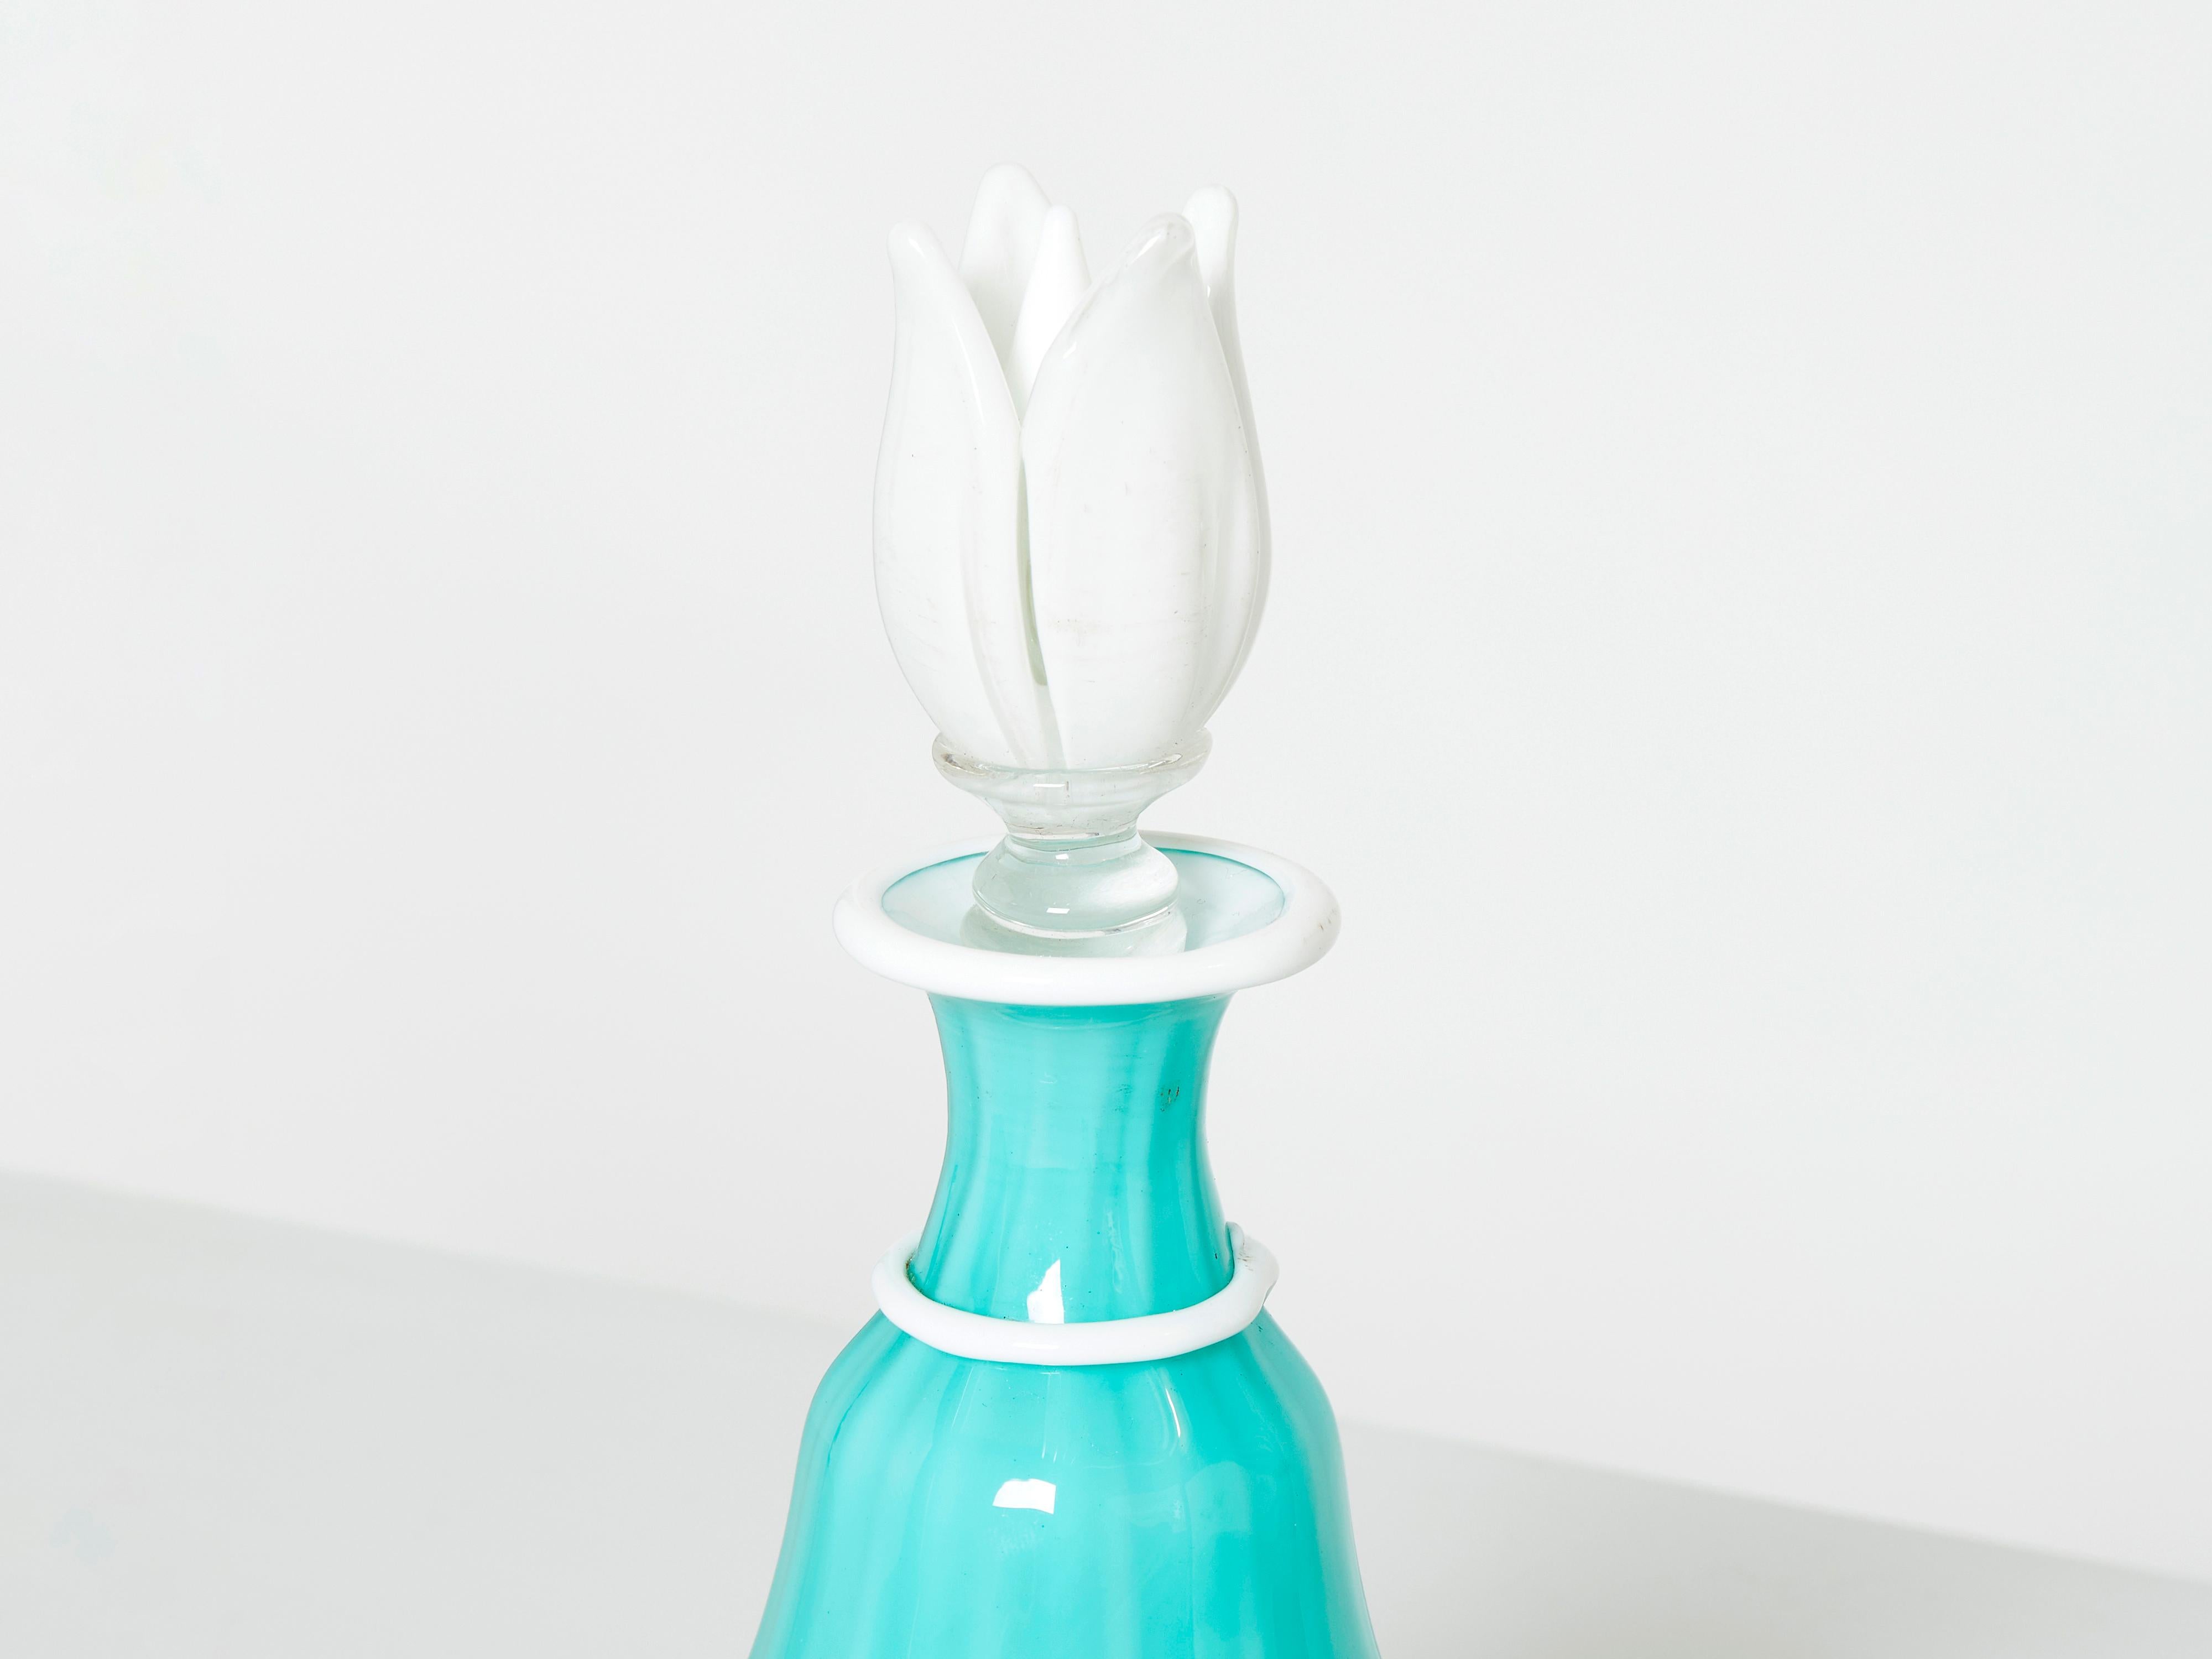 Rare bouteille en verre opale Barovier & toso conçue dans les années 1950. Cette belle flaconne de Murano a une couleur et une présence vraiment accrocheuses, avec un verre opalin turquoise avec une base en verre opalin blanc laiteux, des détails et